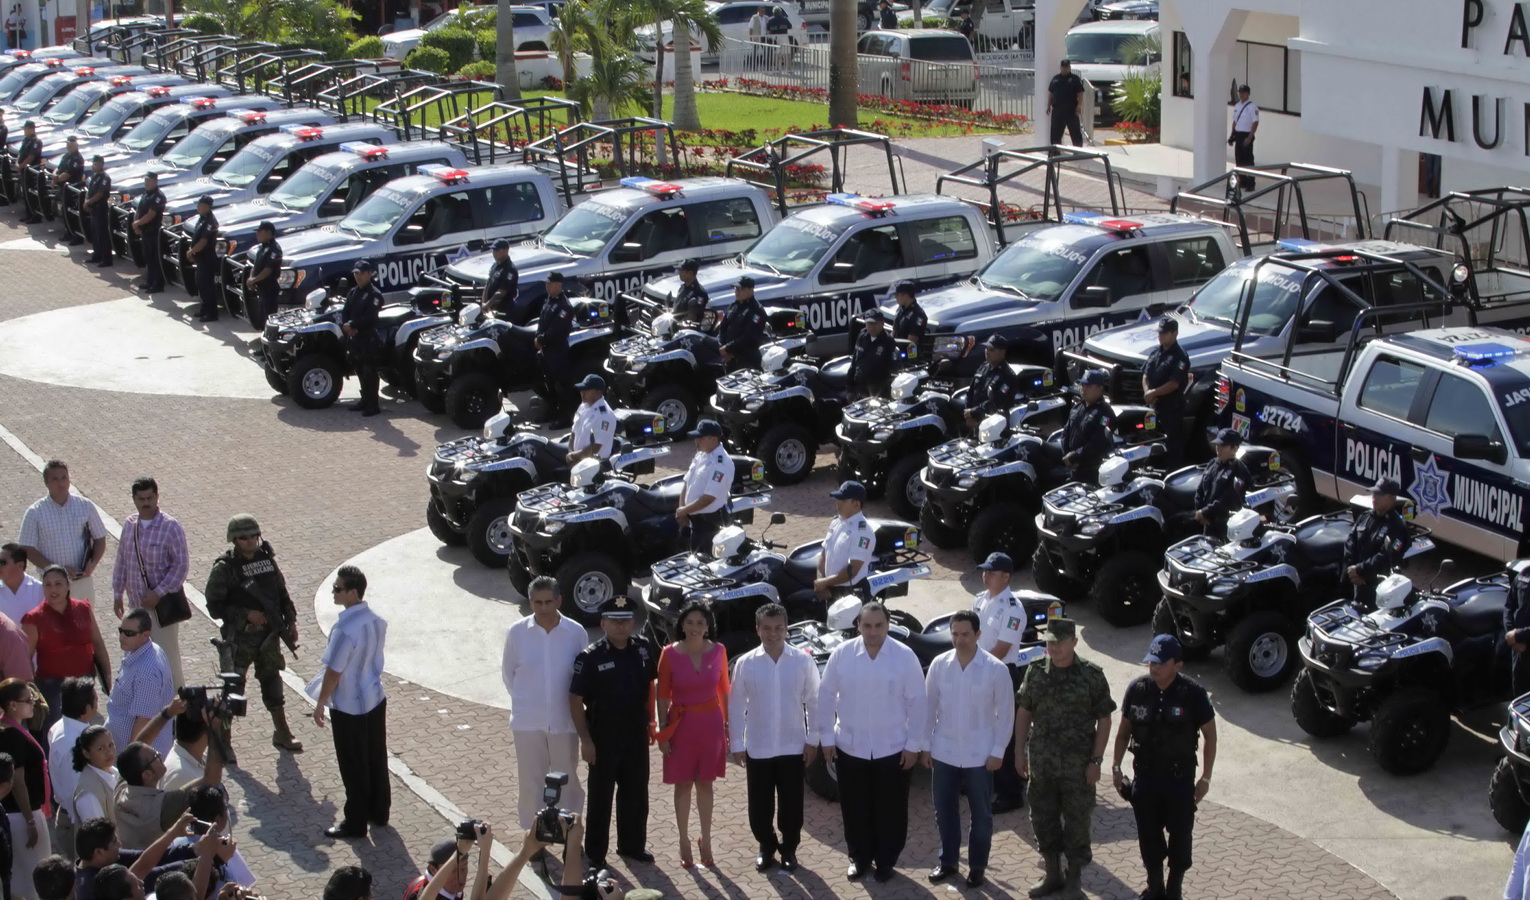 El 18 de diciembre del 2013, el Gobernador Roberto Borge realizó una ceremonia para anunciar la entrega de 41 patrullas y 20 motos, en las que supuestamente se invirtieron 30 millones de pesos, al Alcalde de Solidaridad, Mauricio Góngora. En realidad, esas patrullas habían sido rentadas a una Sofom de un ex funcionario de Peña Nieto.